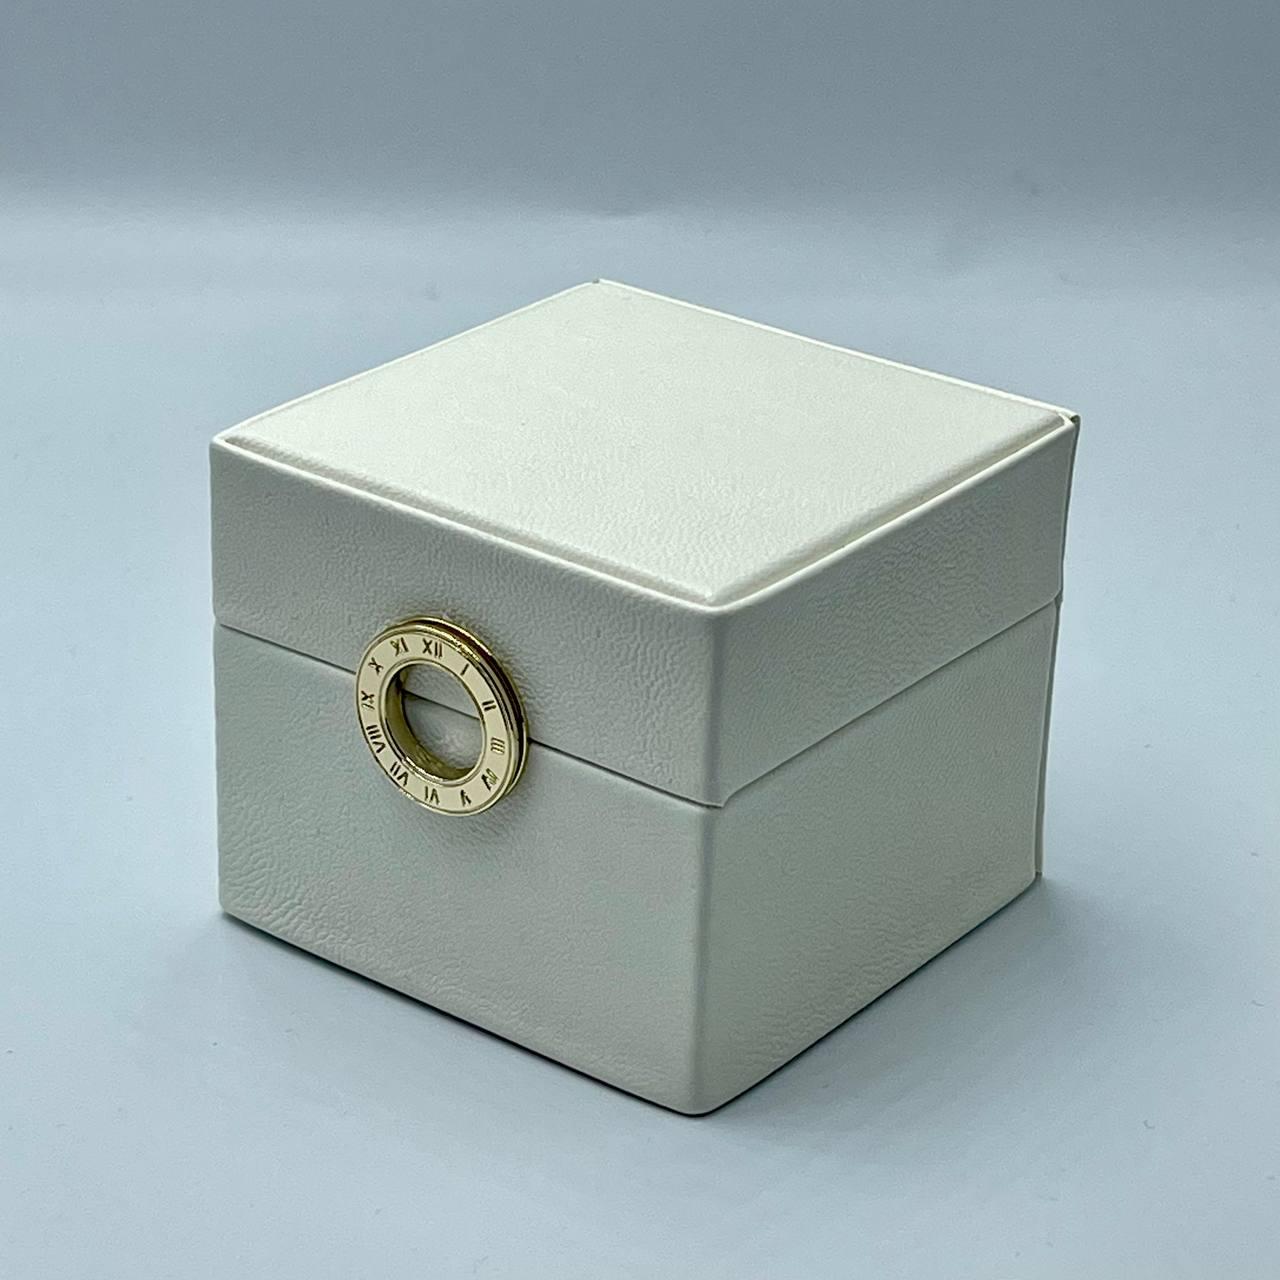 Ювелирная коробочка белая для кольца 19375-80